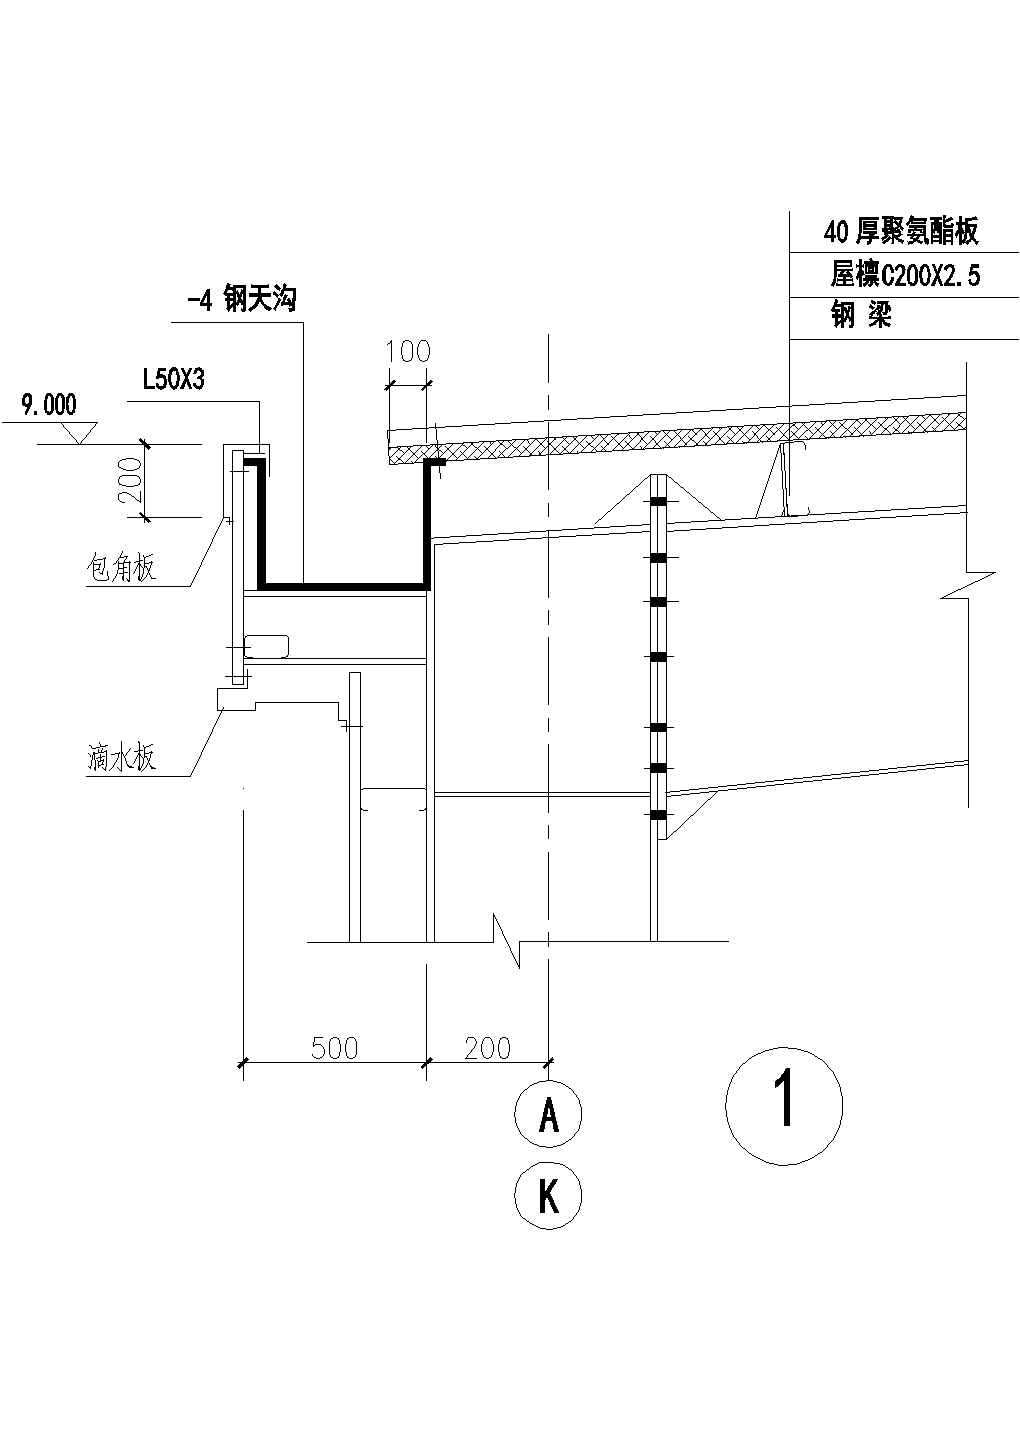 扬州市广陵区某村镇私人别墅檐口节点建筑设计CAD施工图